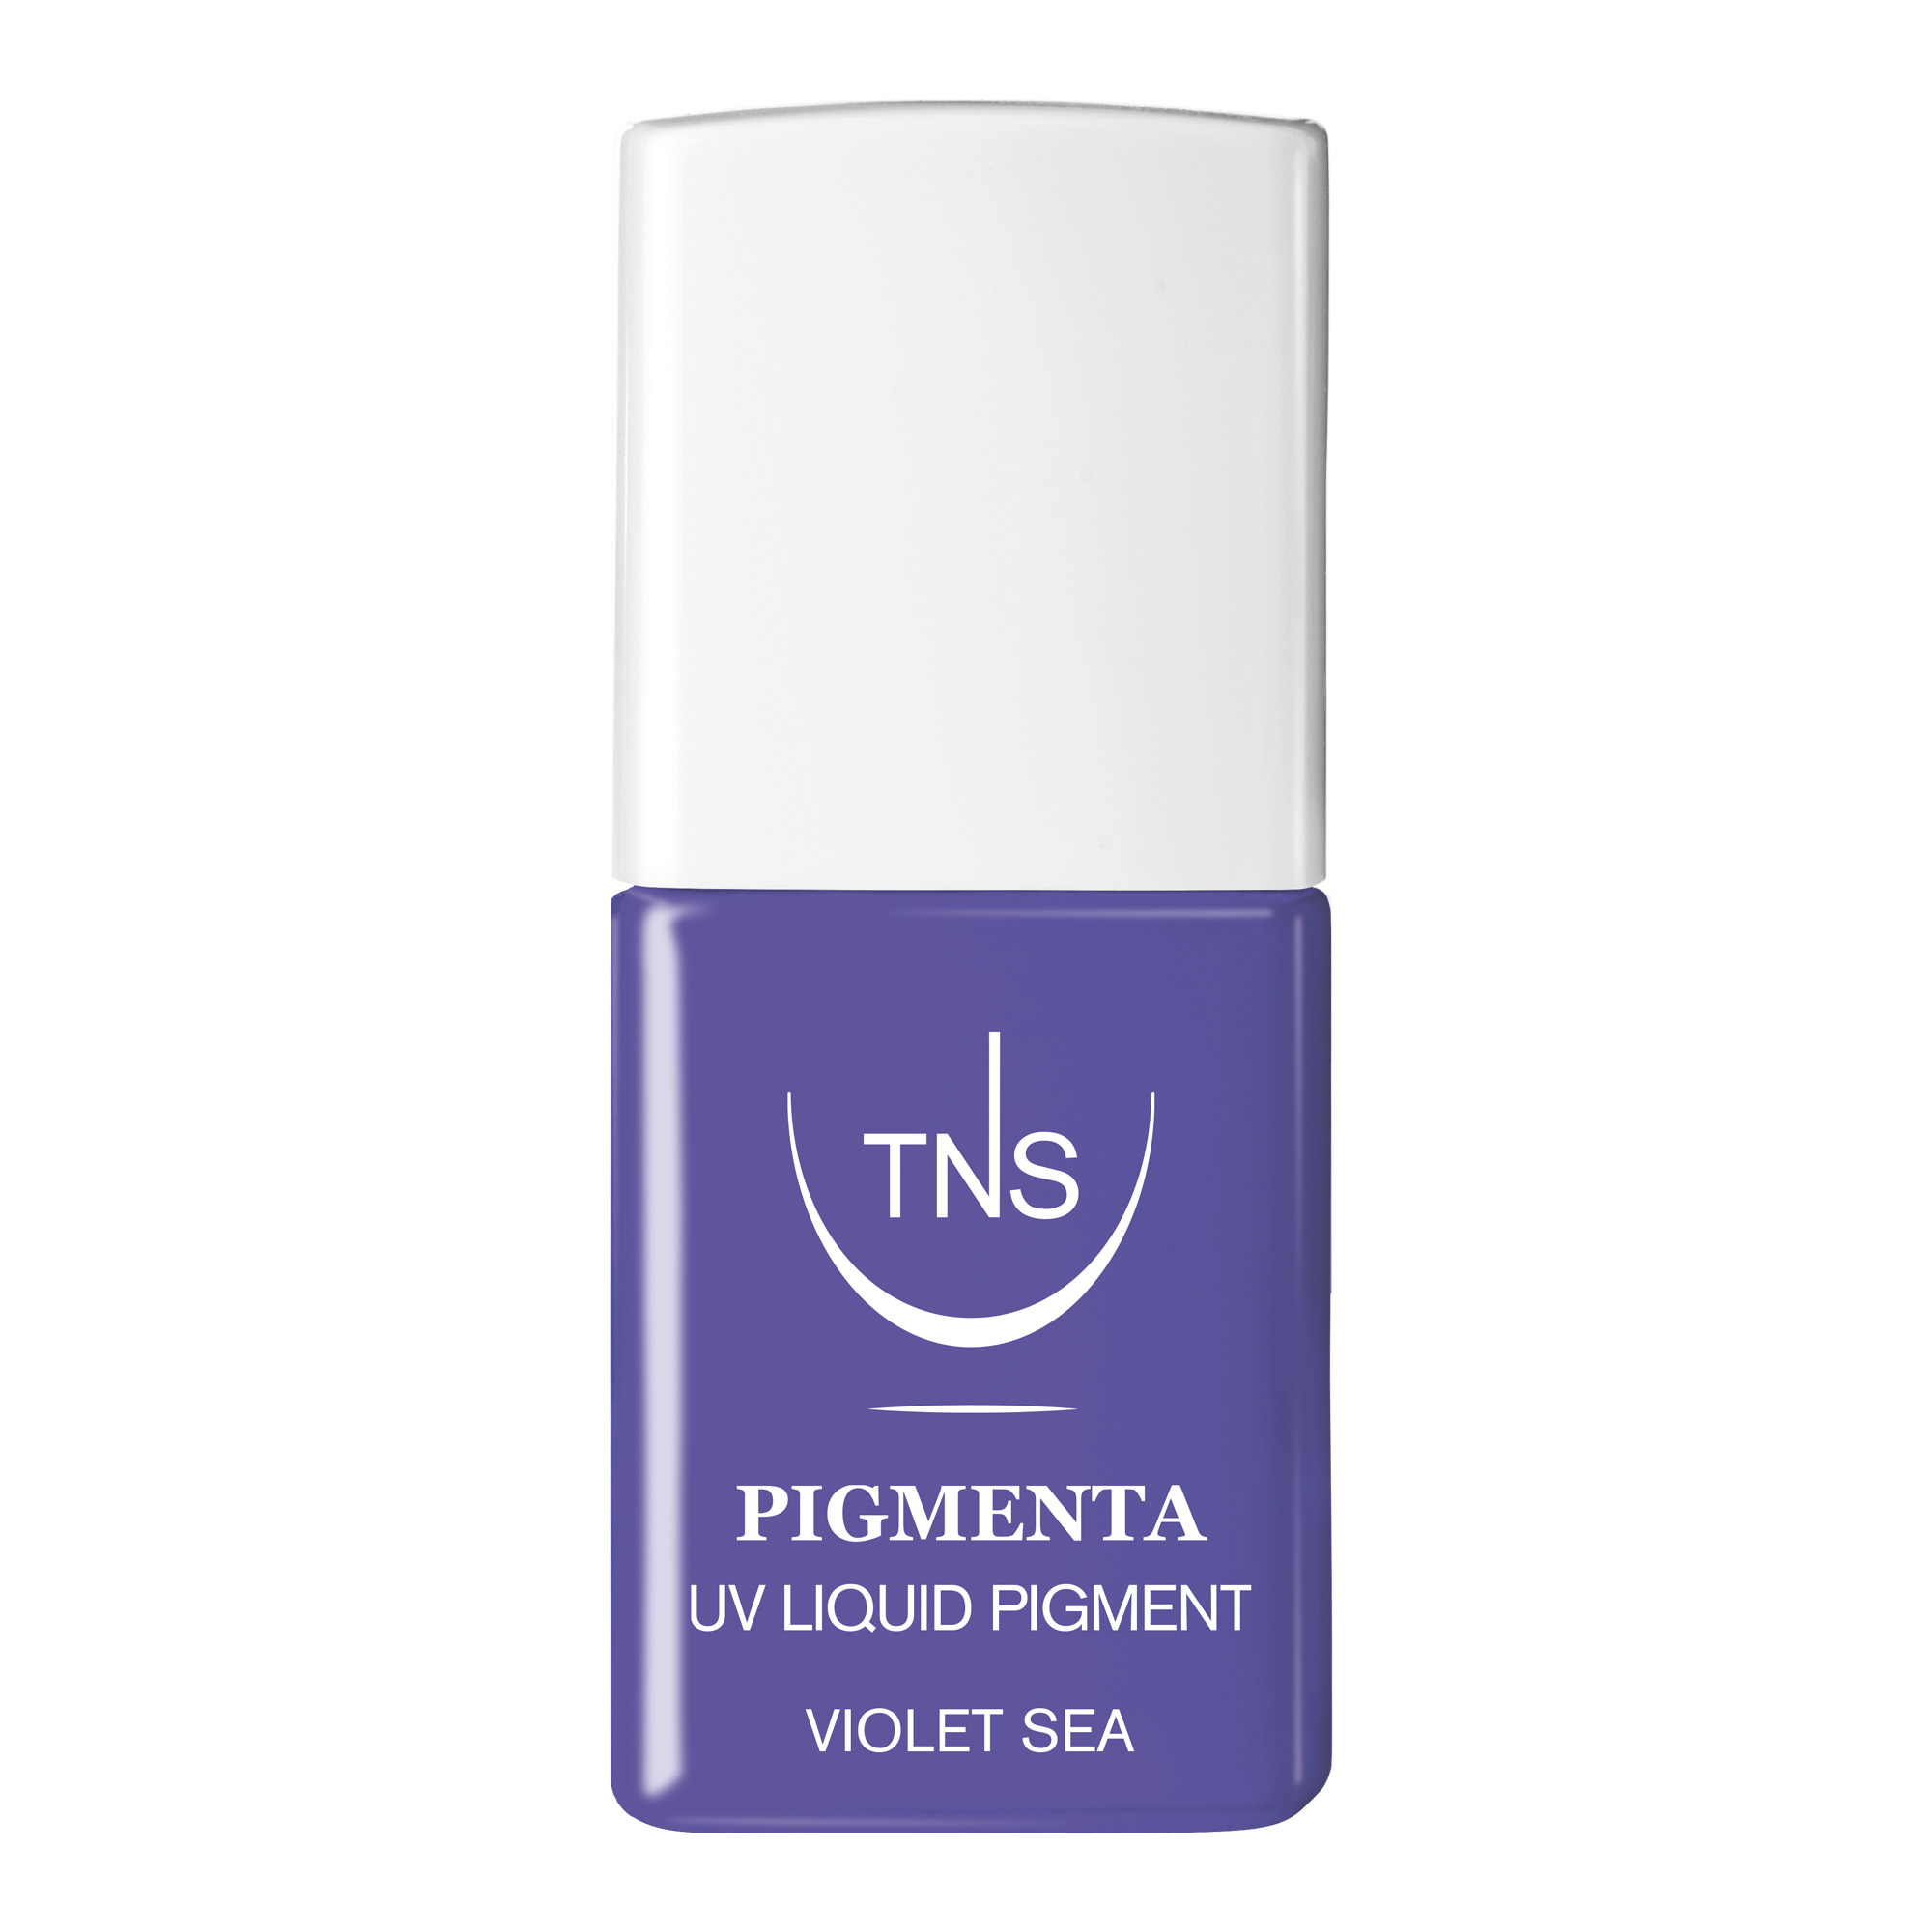 Pigment liquide UV Violet Sea bright violet 10 ml Pigmenta TNS